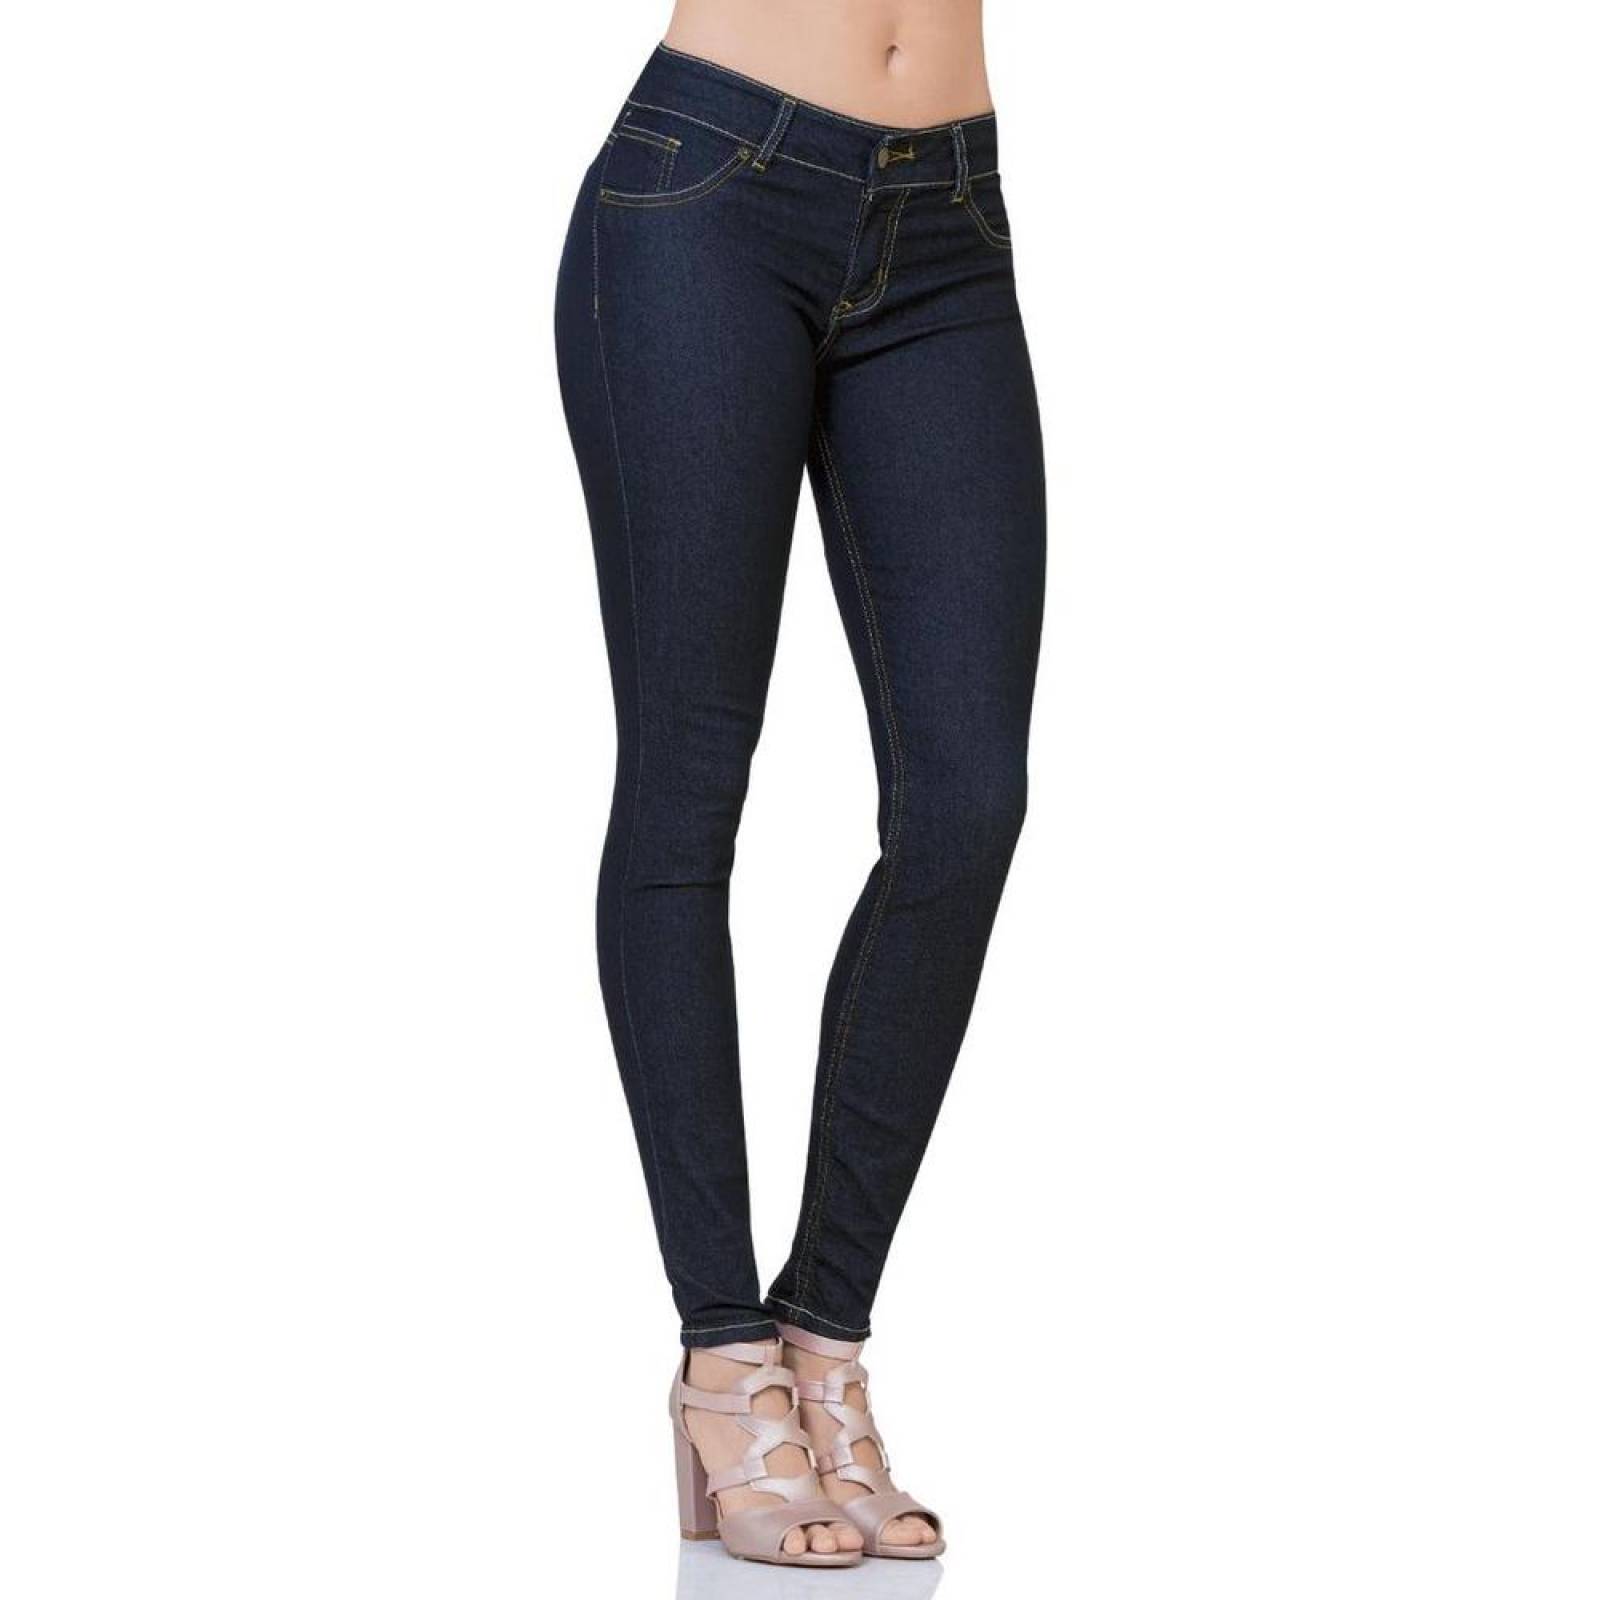 Jeans Básico Mujer Salvaje Tentación Indigo 63100132 Mezclilla Stretch 